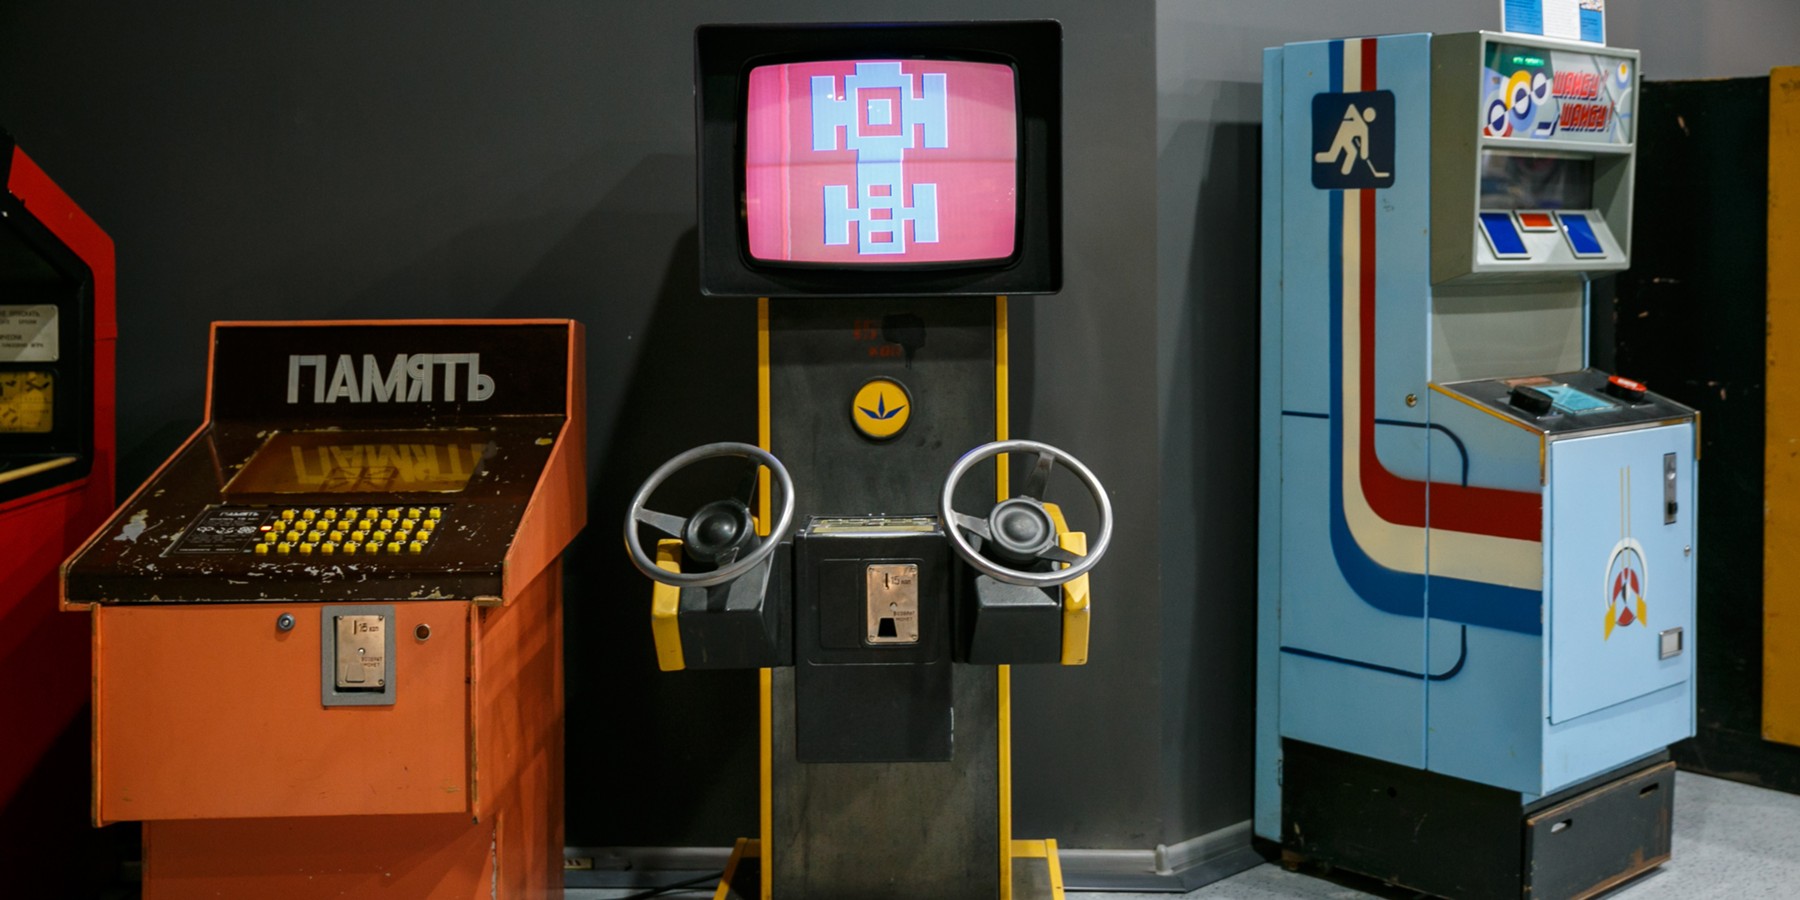 Игровые автоматы аренда лицензии играть в игровые автоматы бесплатно и регистрации